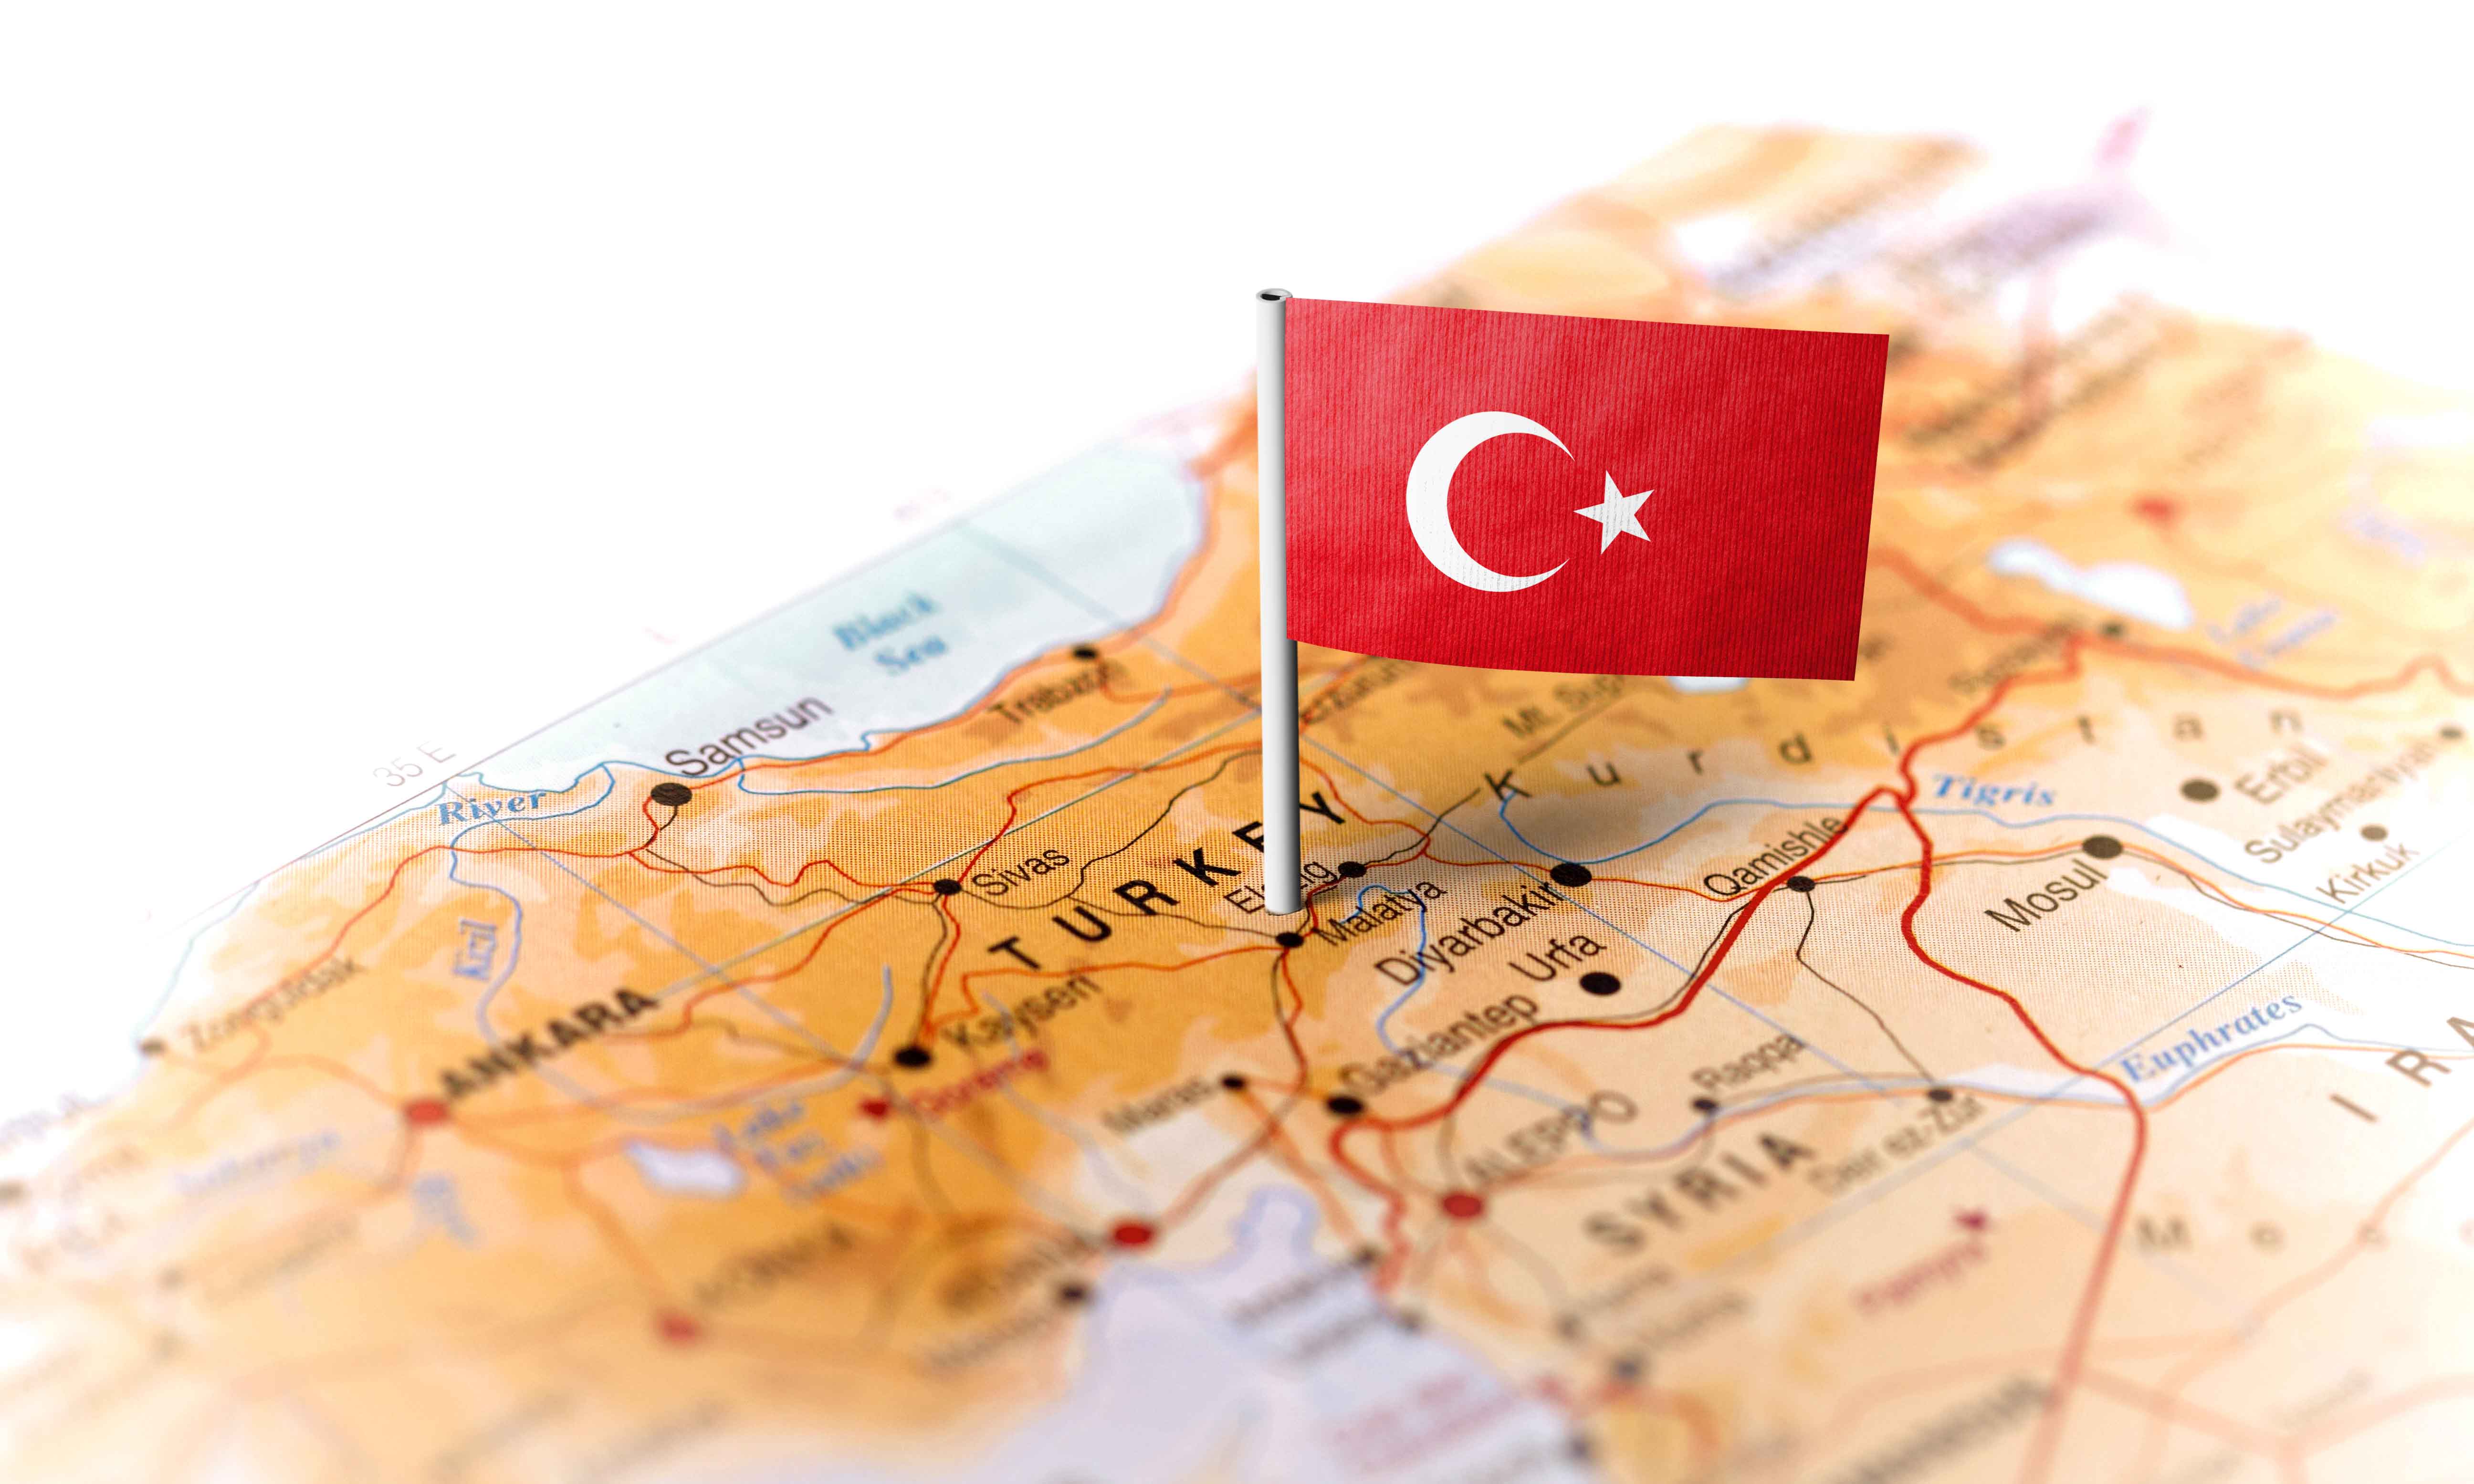 Statsanställda i Turkiet åsiktsregistreras, uppger Arbetet Global.